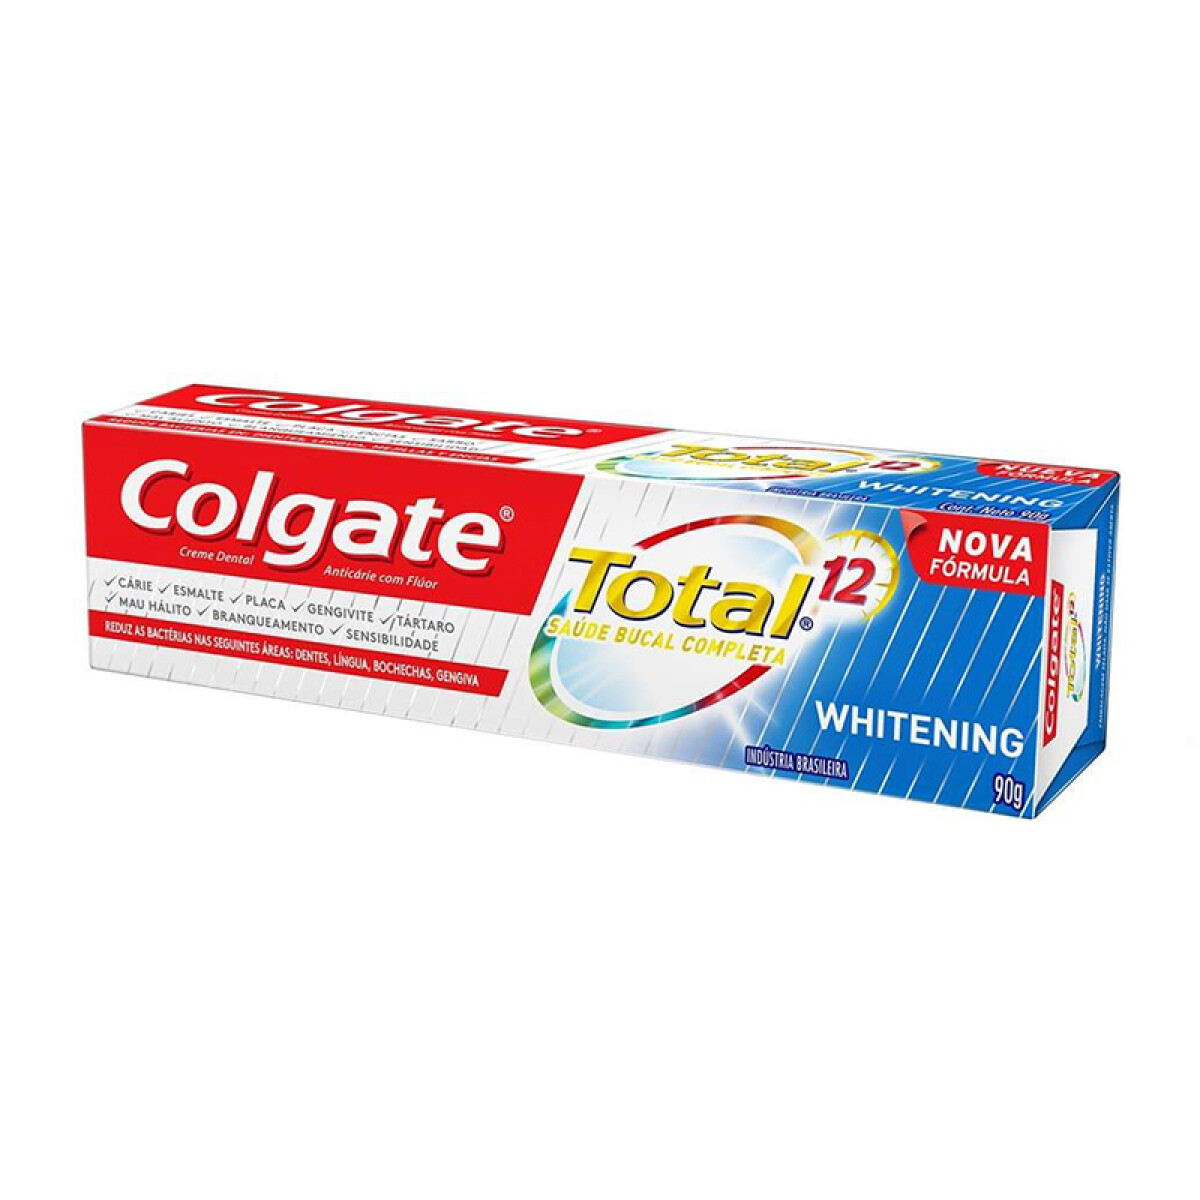 Crema Dental COLGATE Total 12 Whitening 90g 